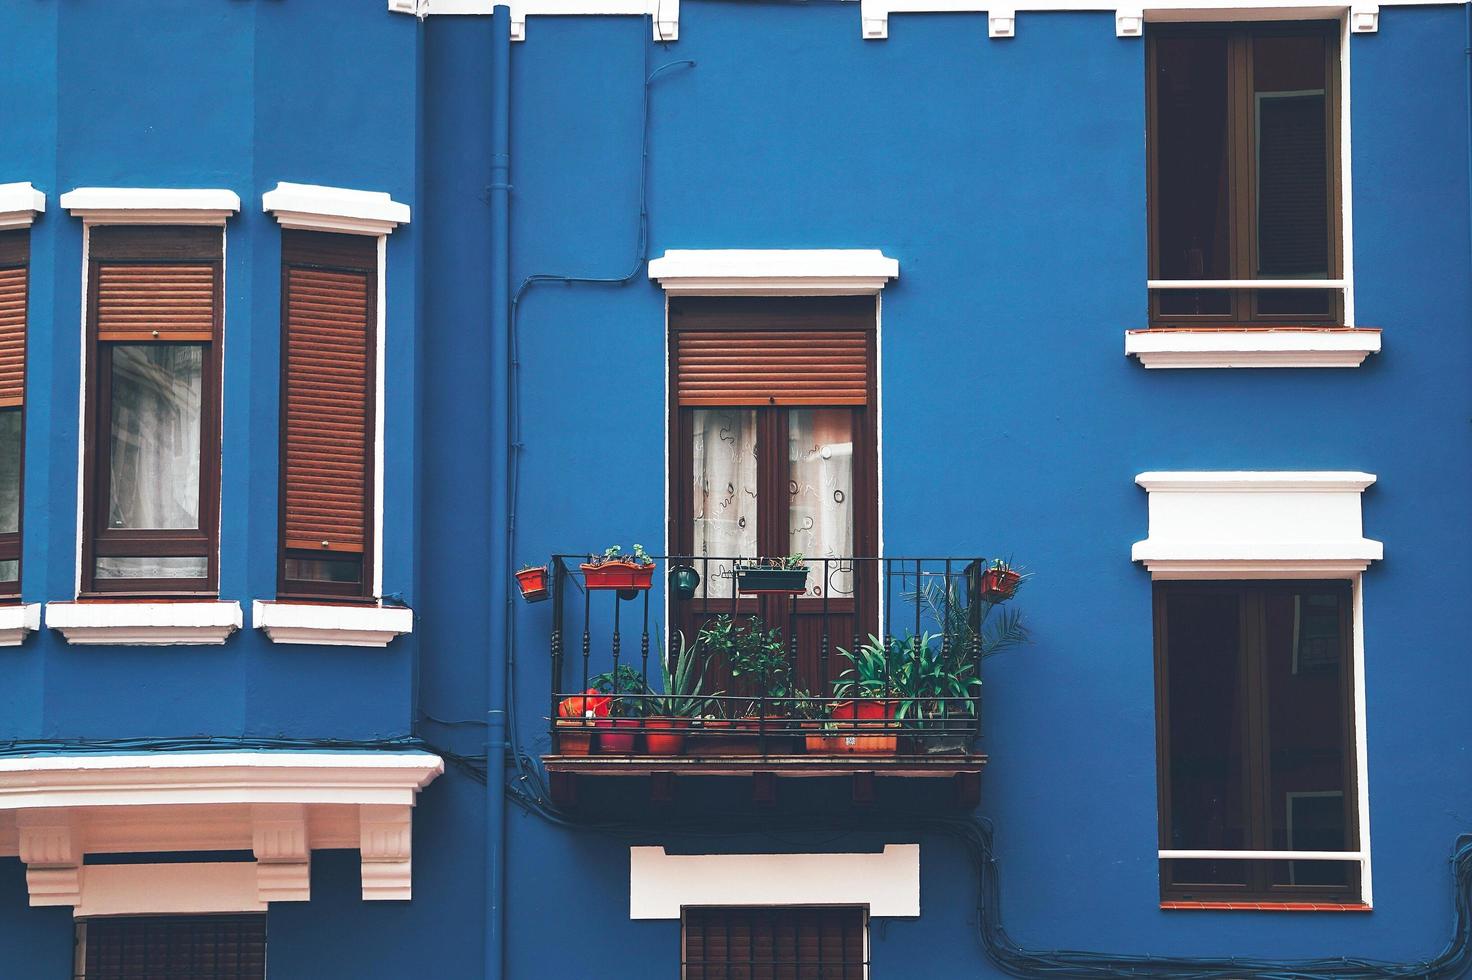 Fenêtre sur la façade bleue de l'immeuble dans la ville de Bilbao, Espagne photo